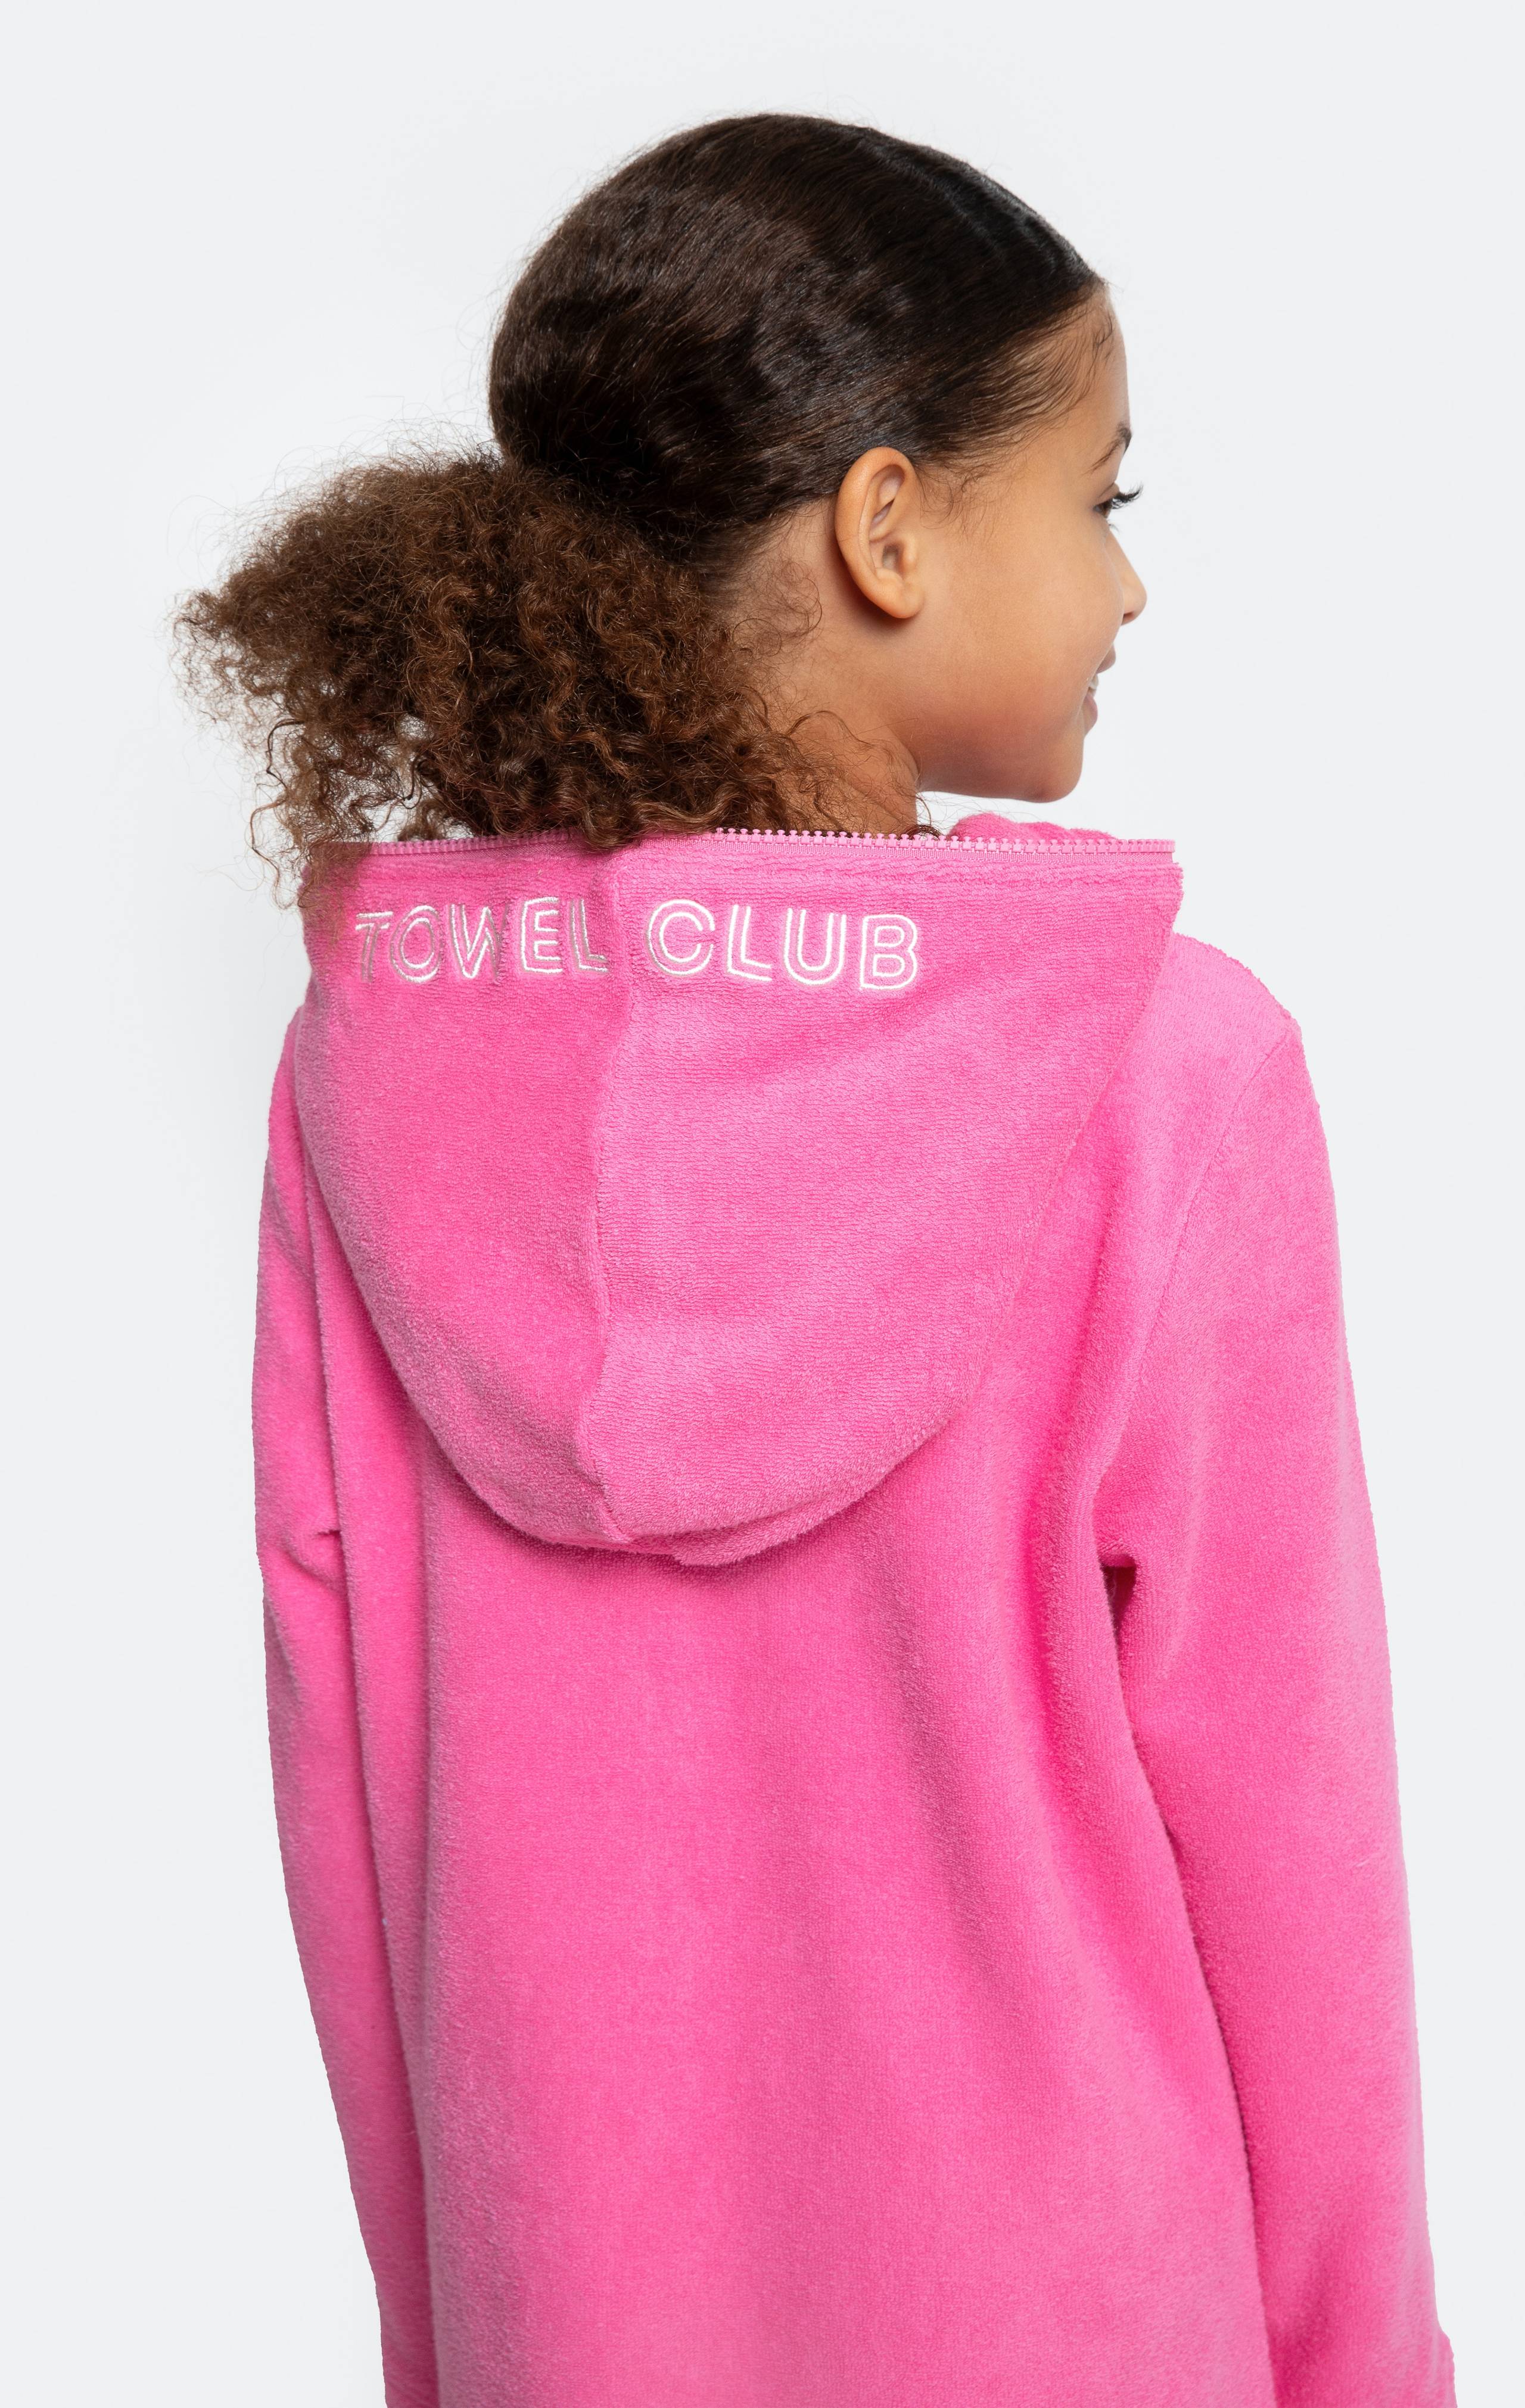 Onepiece Towel Club X Onepiece KIDS Towel Jumpsuit Pink - 3